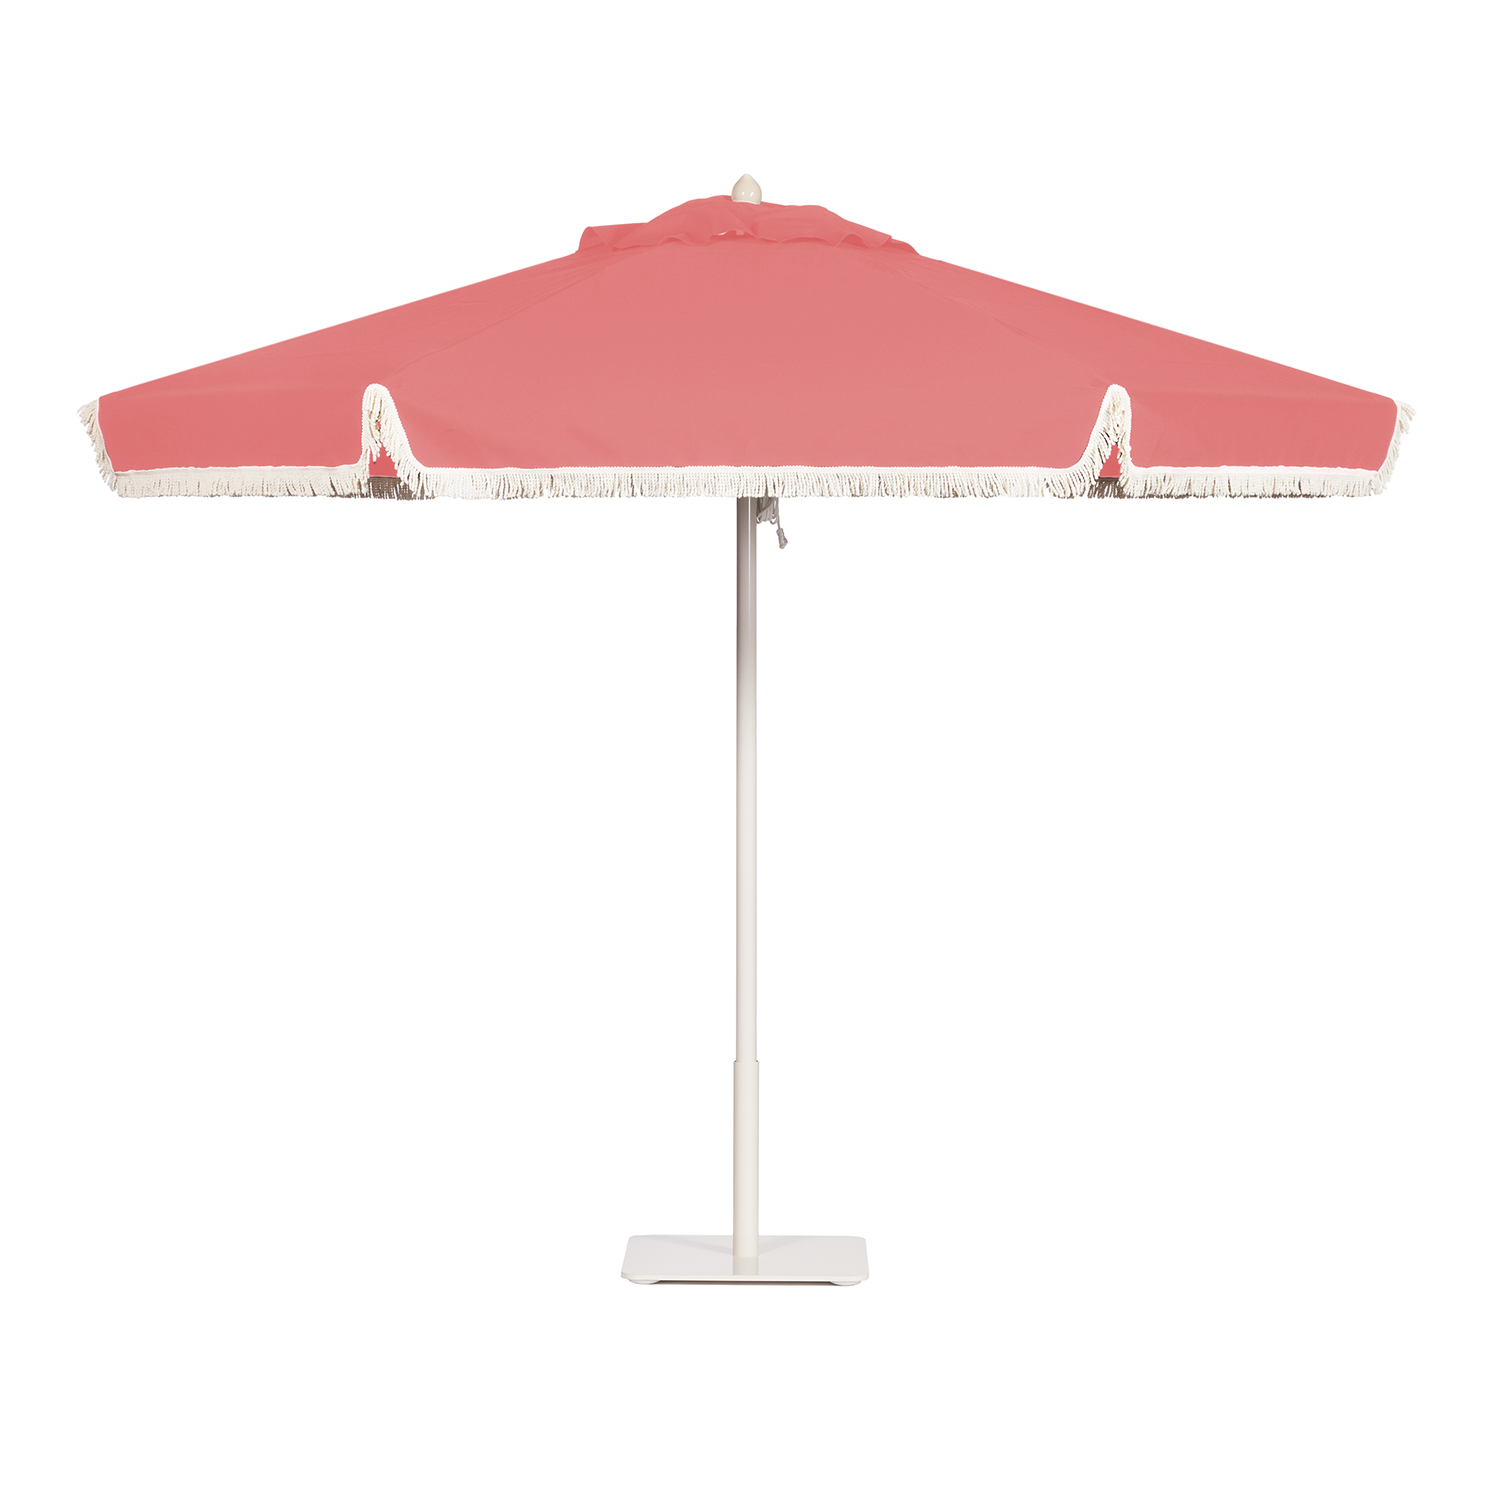 Image of Paseo aluminum umbrella